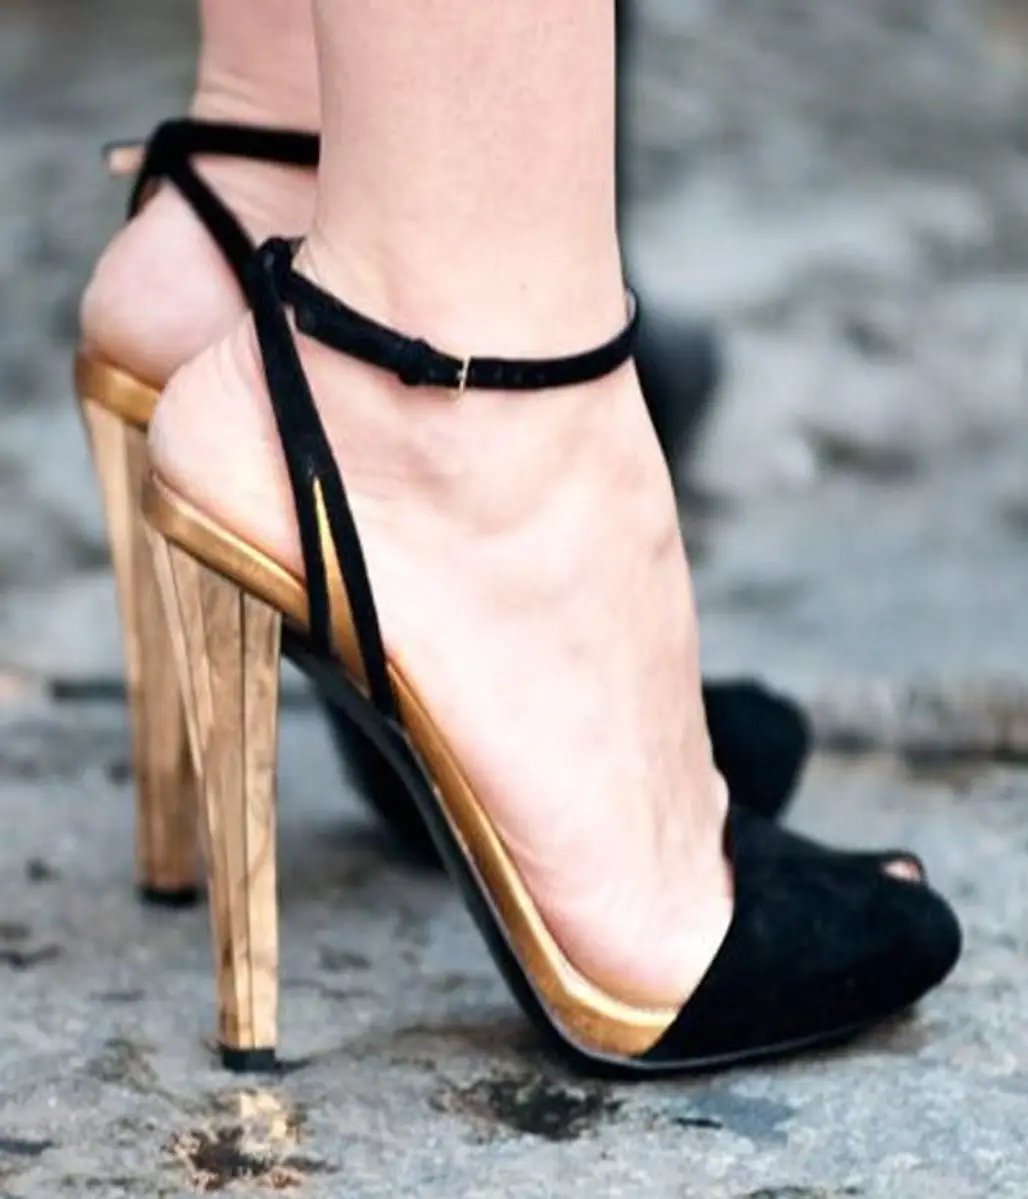 high heeled footwear,footwear,leg,shoe,spring,